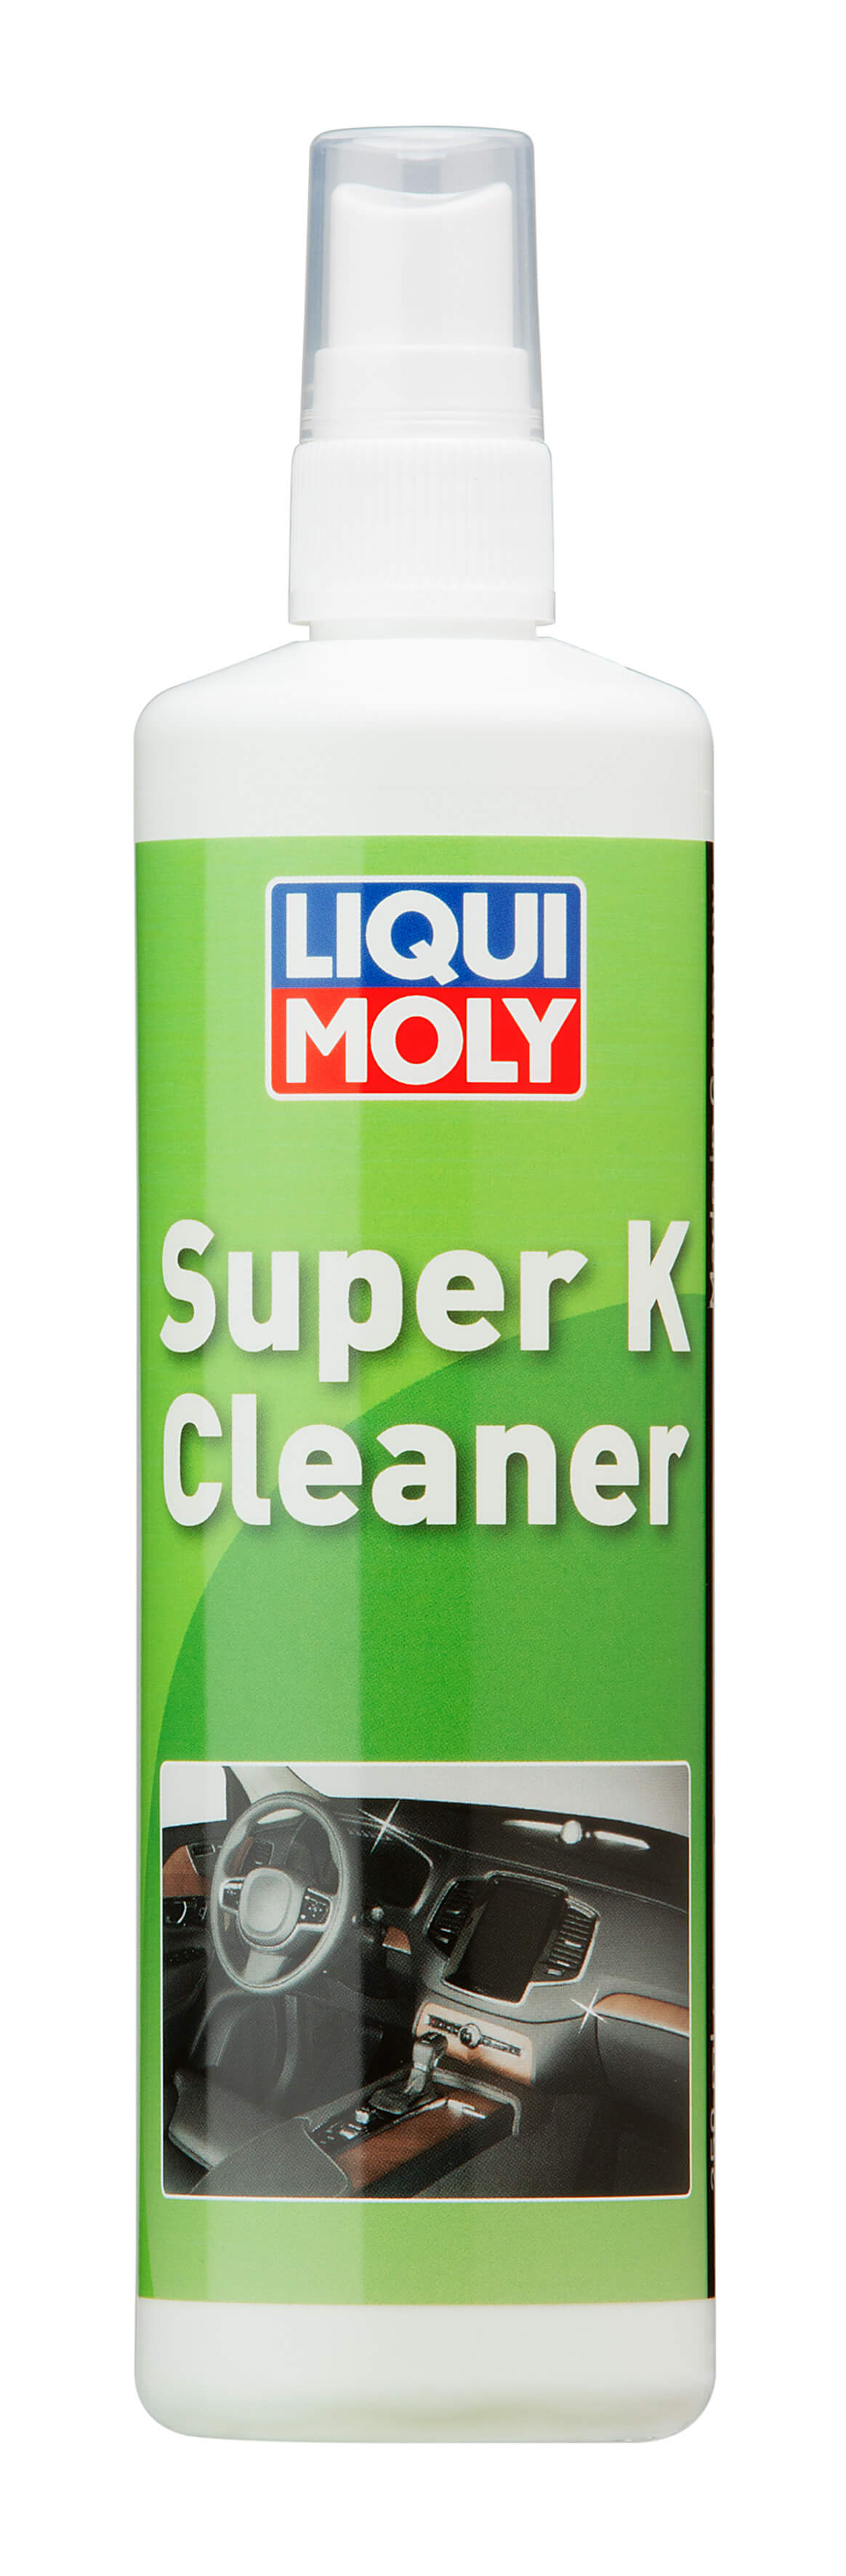 Очиститель Super K Cleaner  0,25L